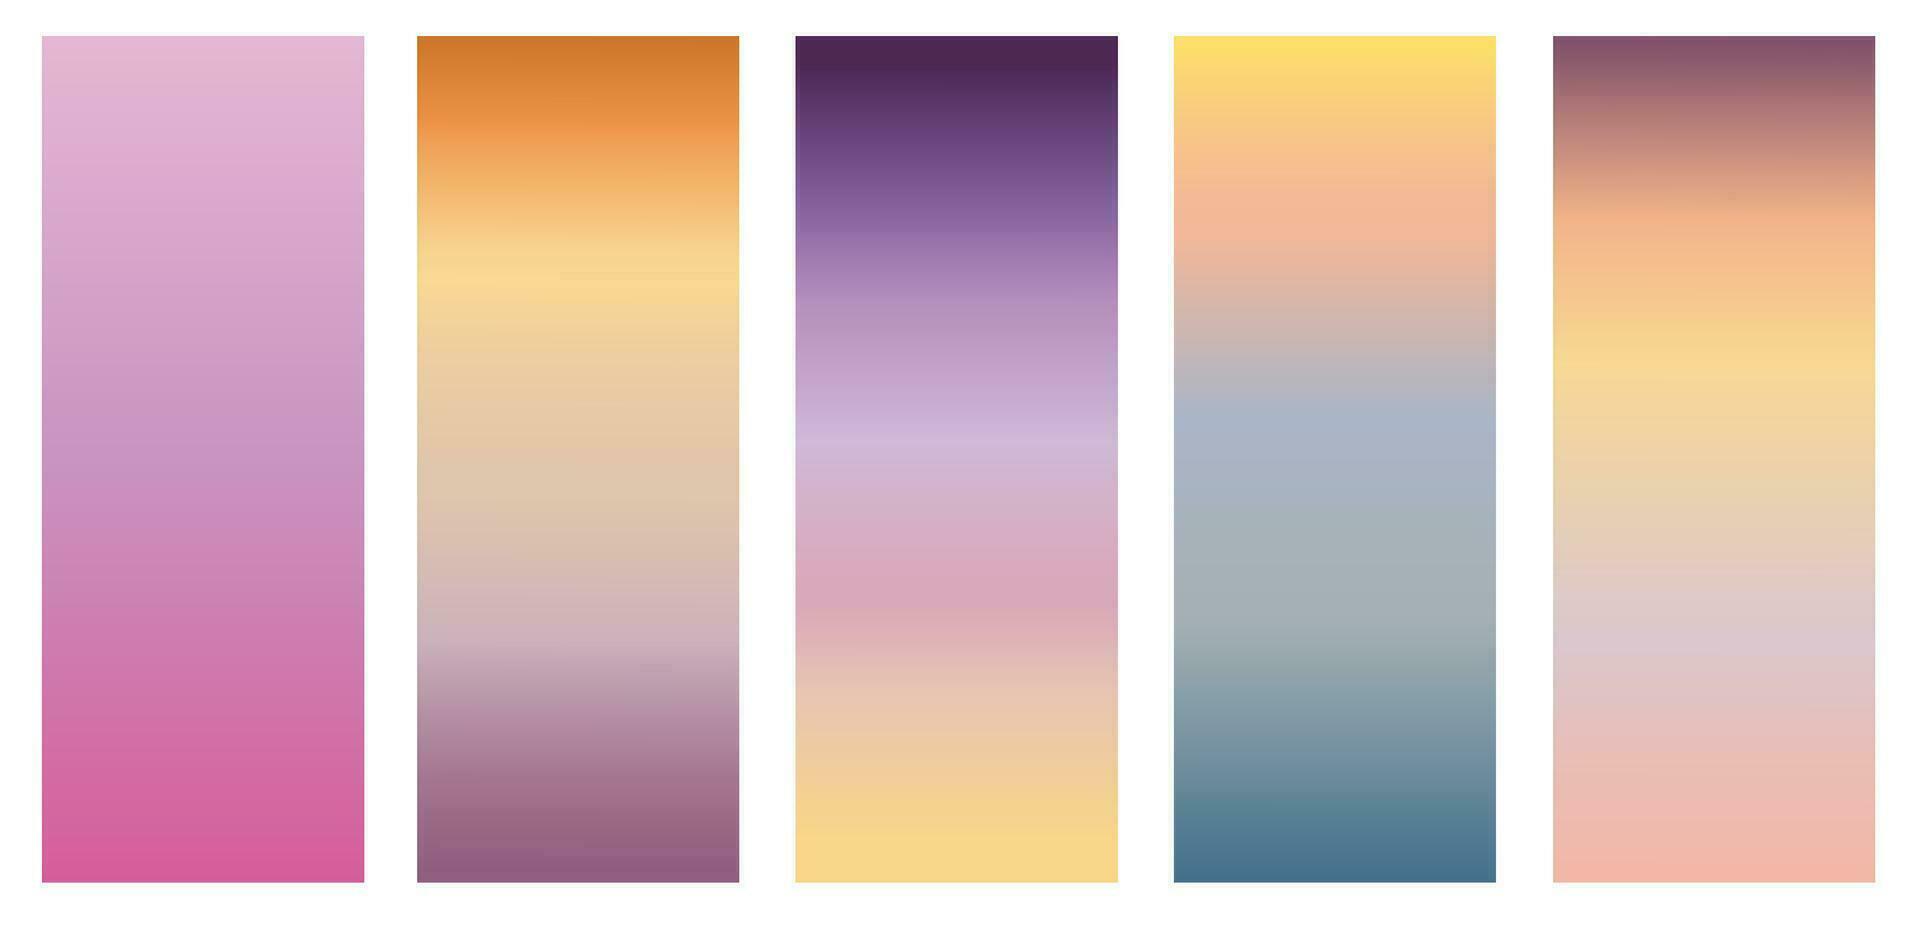 impostato di gradienti luminosa, liscio, pastello pendenza colori disegni per dispositivi, computer e moderno smartphone schermo sfondi. vettore illustrazione.